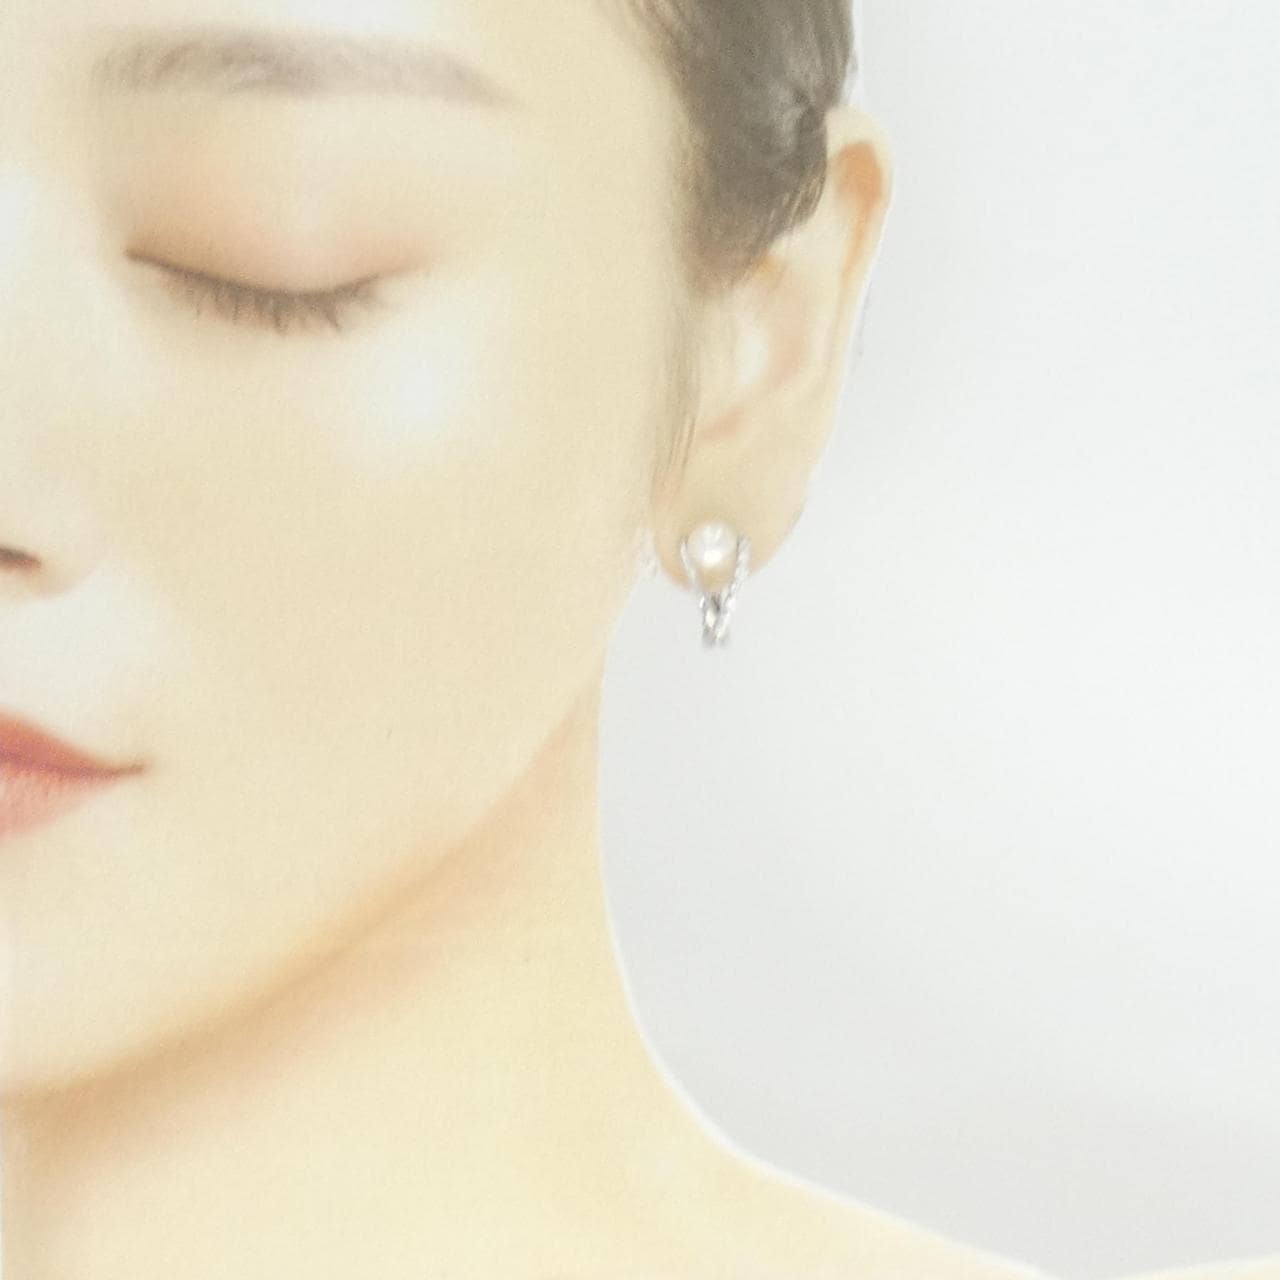 Tasaki Akoya pearl earrings 6.7mm